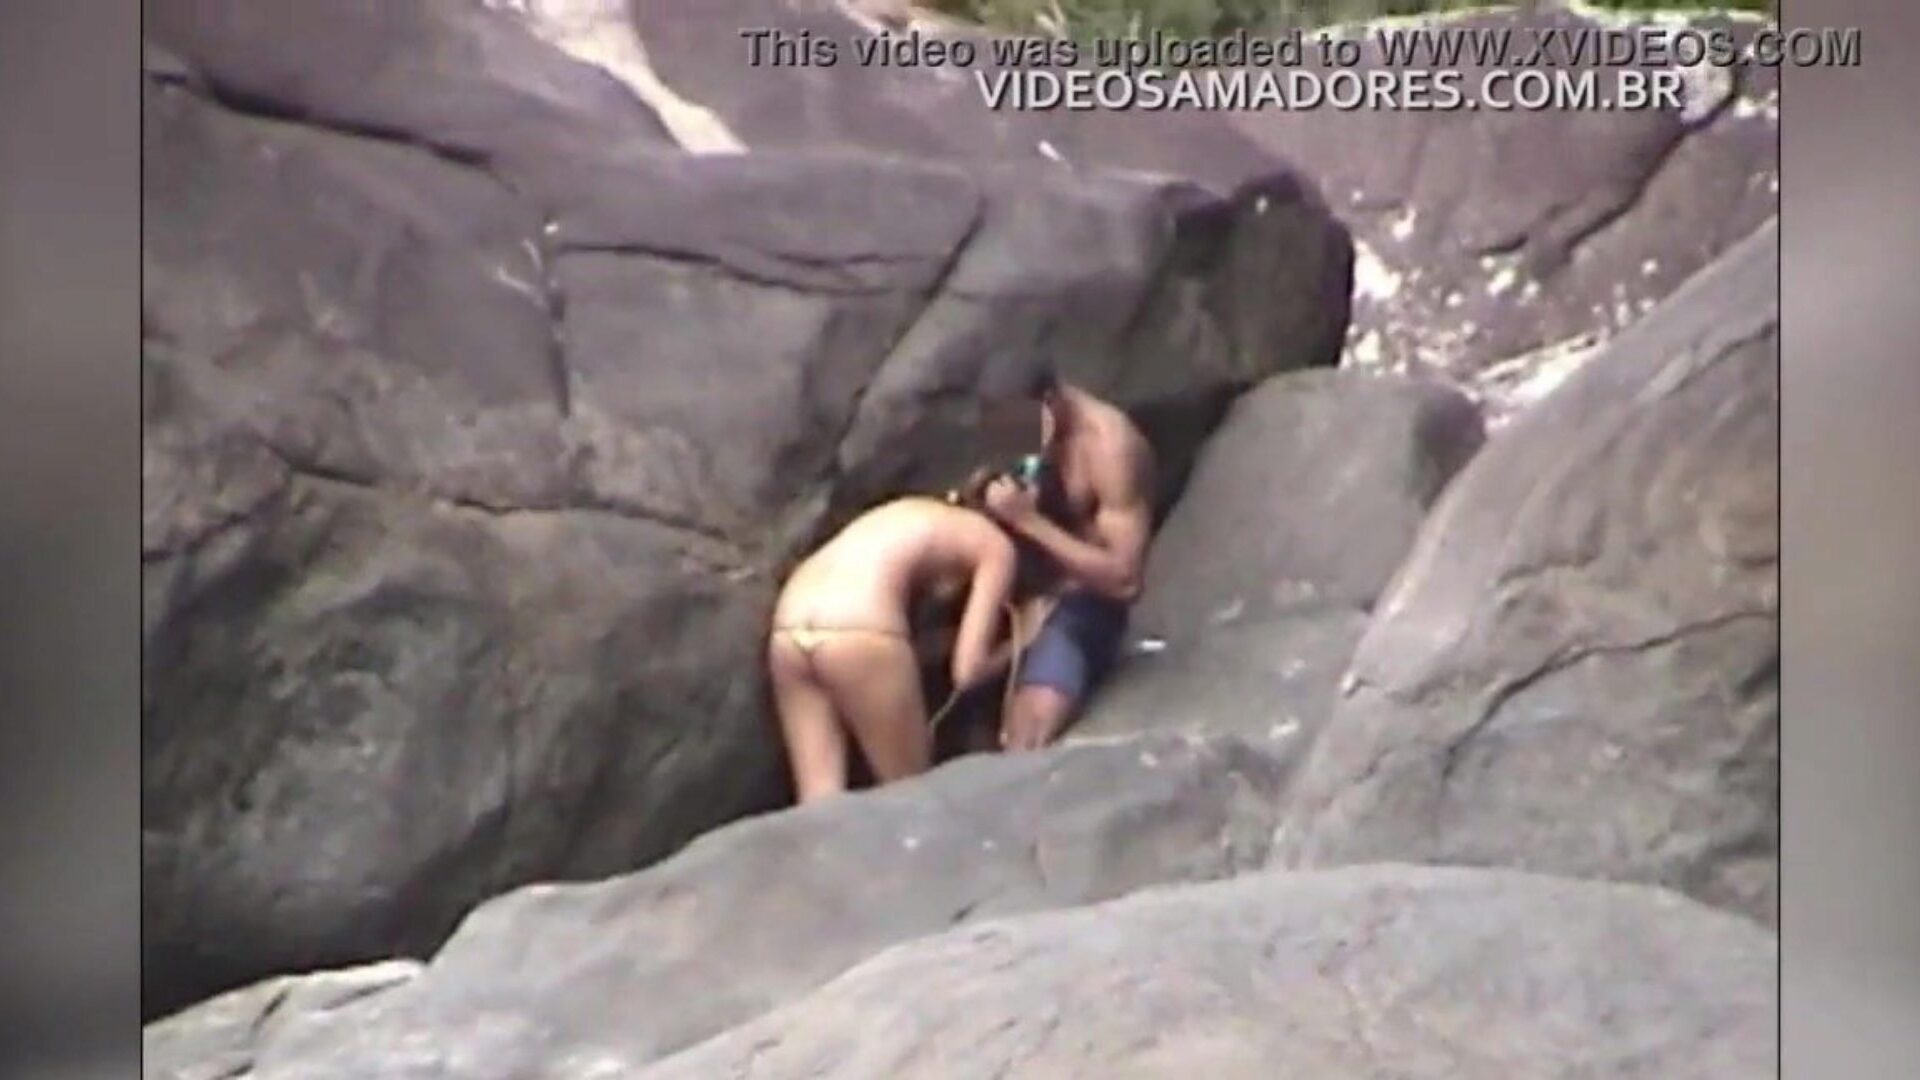 par har muntlig jobbkobling på stranden og blir filmet uten å vite det